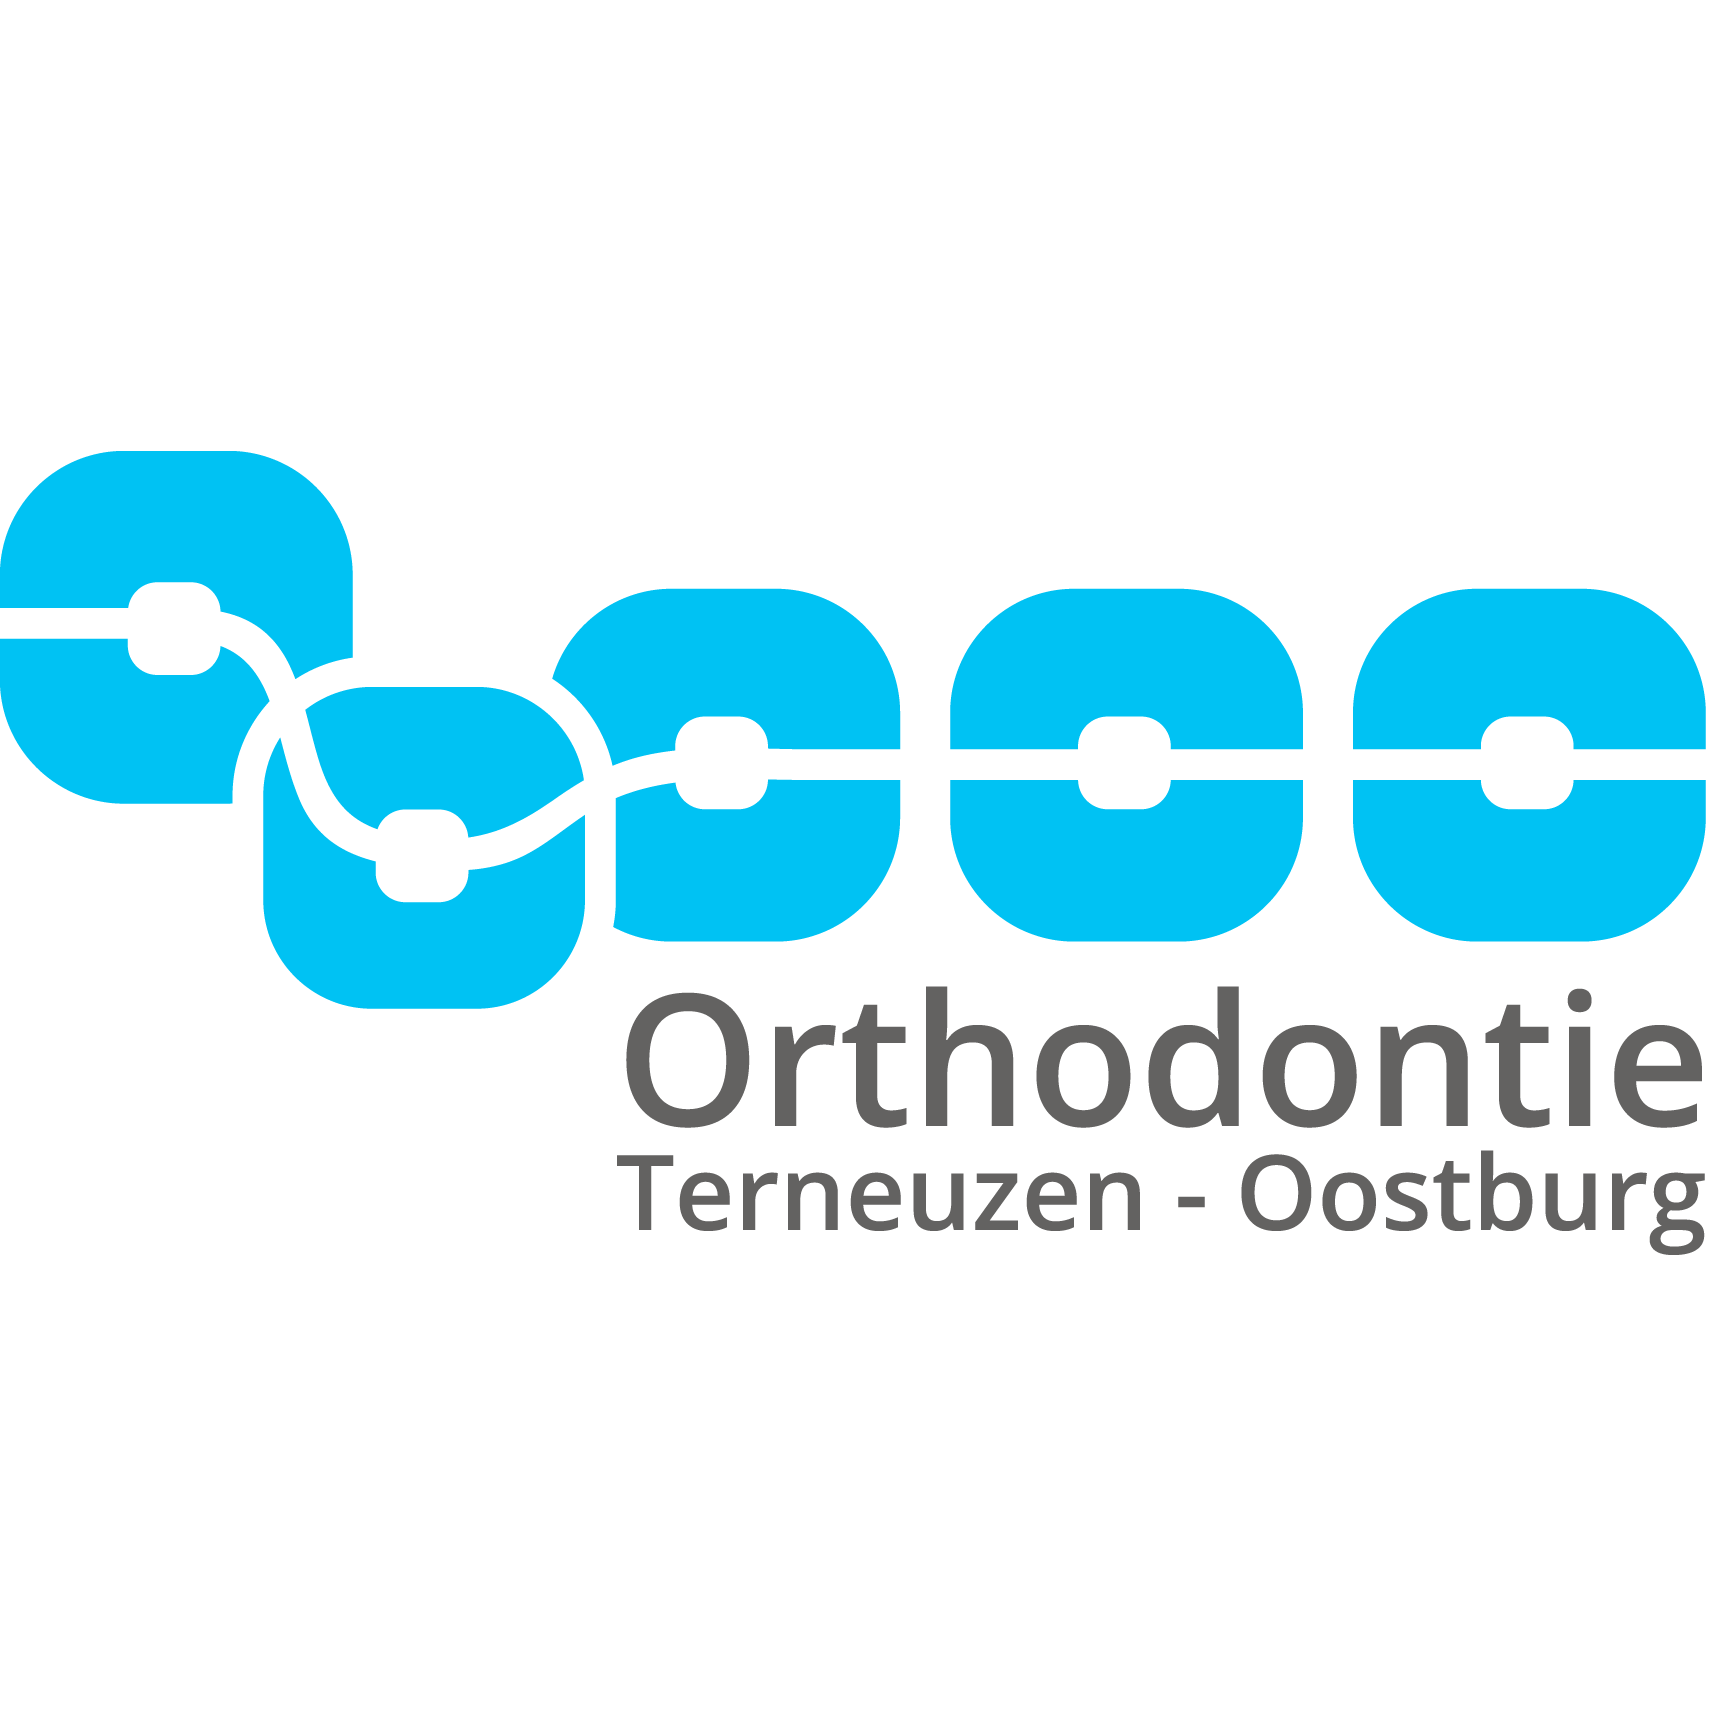 Orthodontie Terneuzen - Oostburg Logo